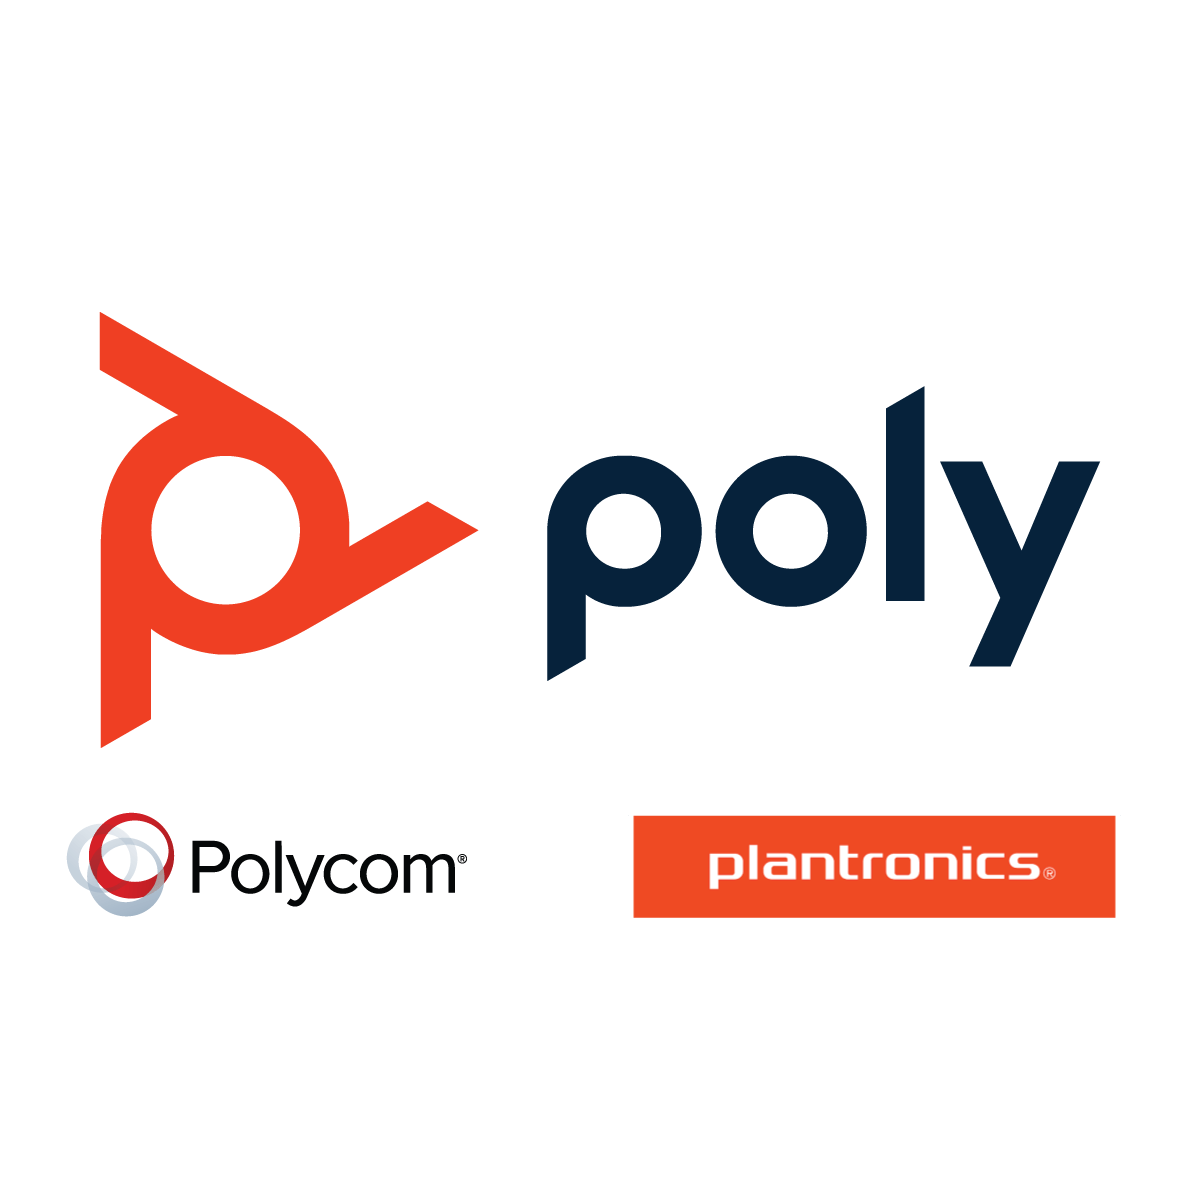 Polycom official partner